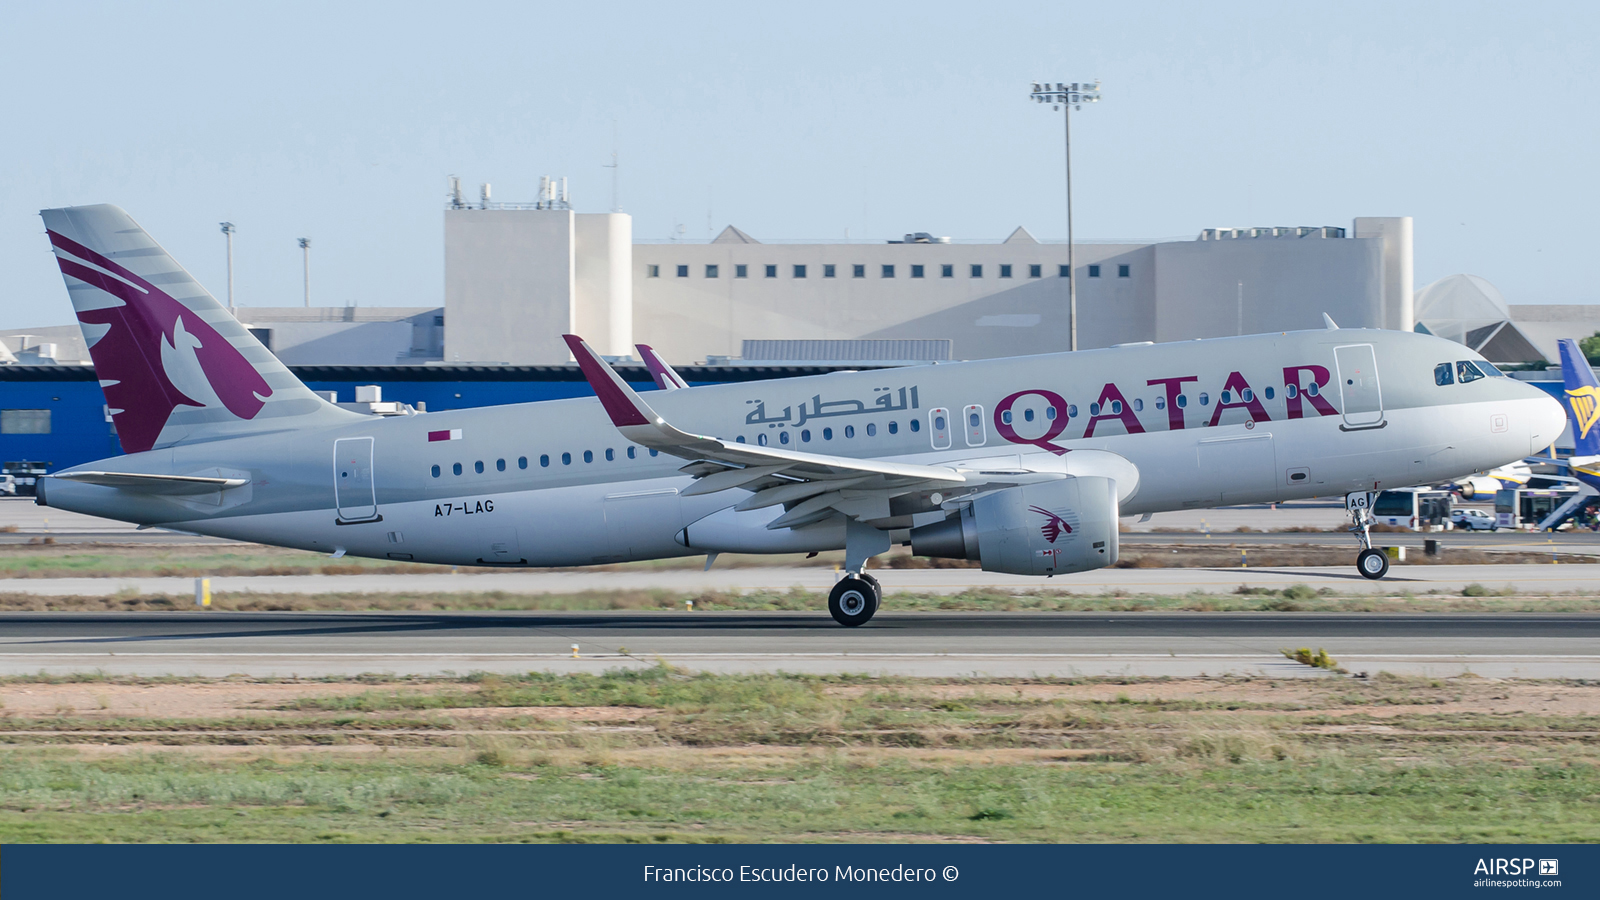 Qatar Airways  Airbus A320  A7-LAG